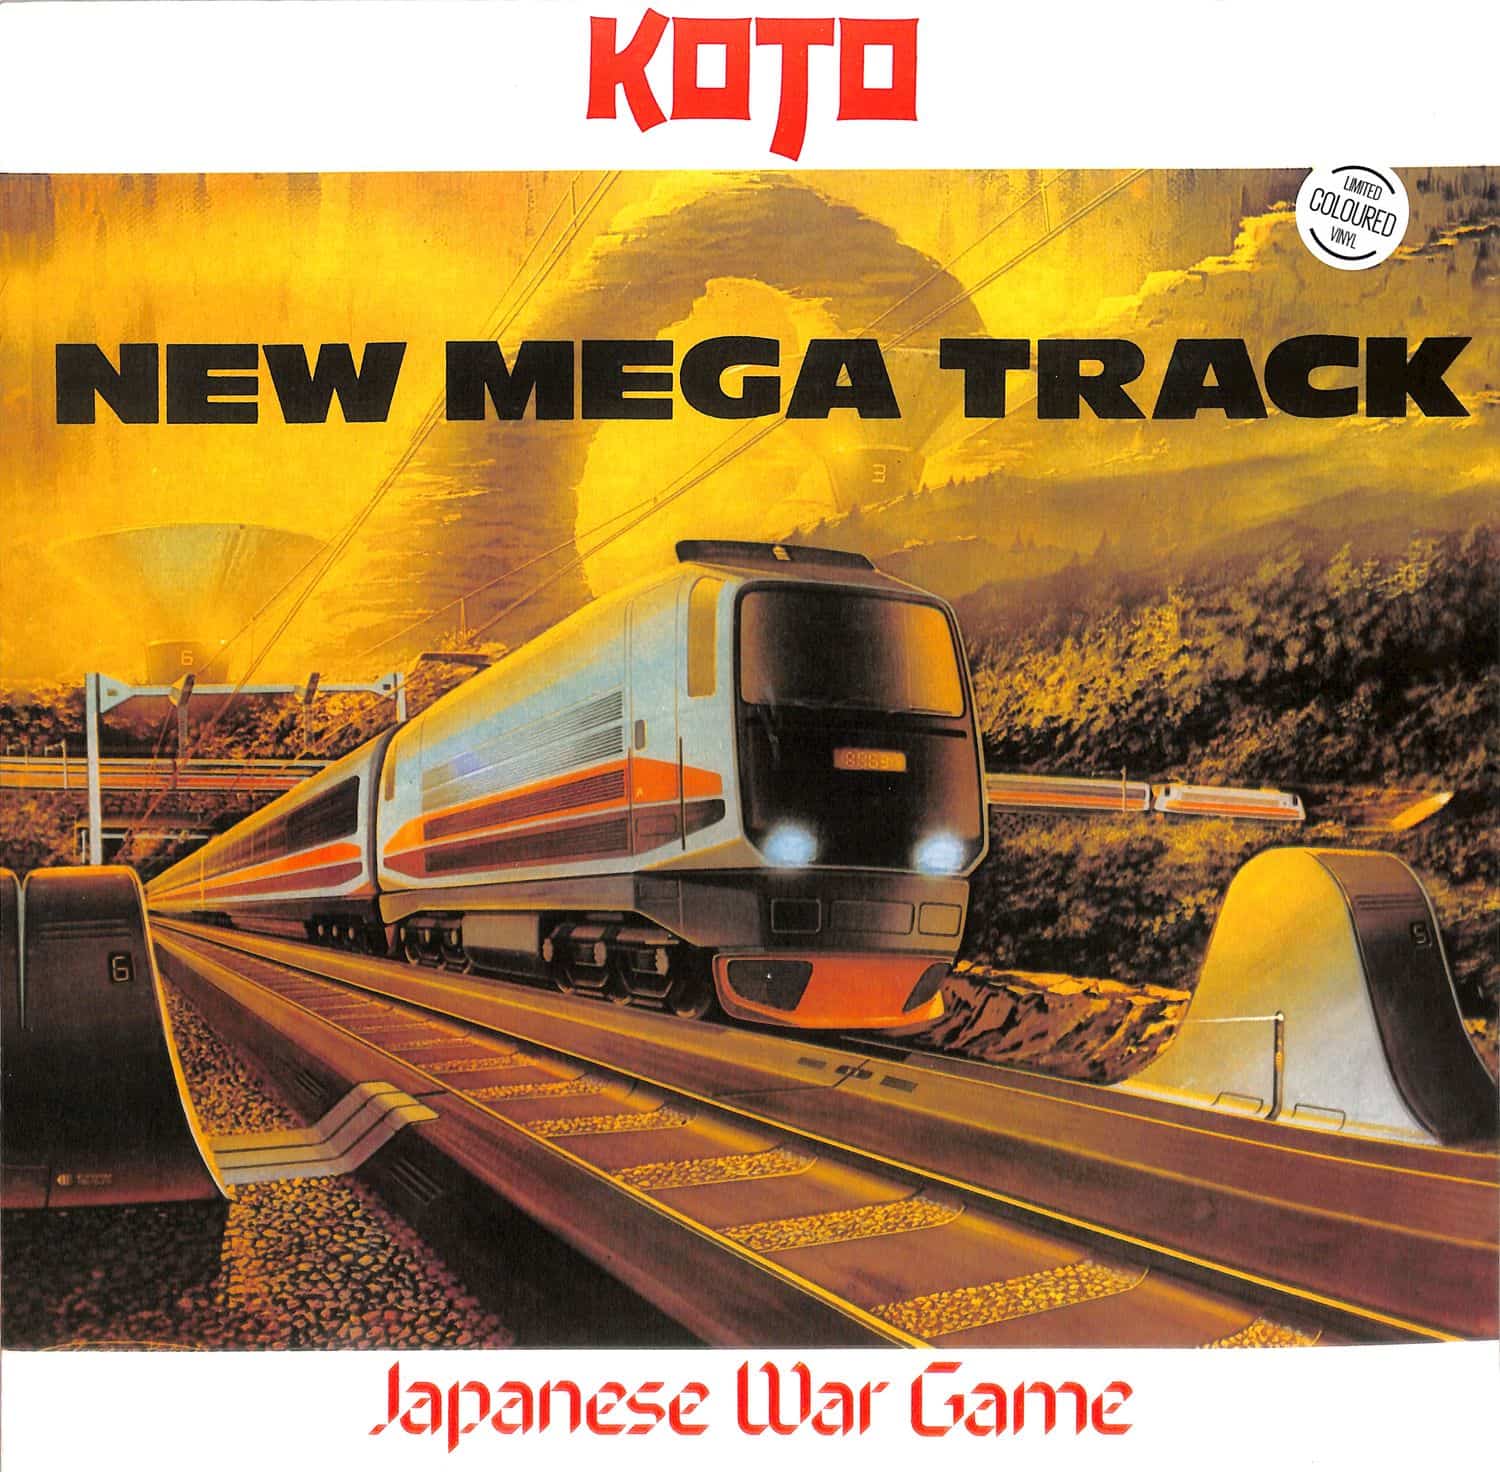 Koto - JAPANESE WAR GAME 